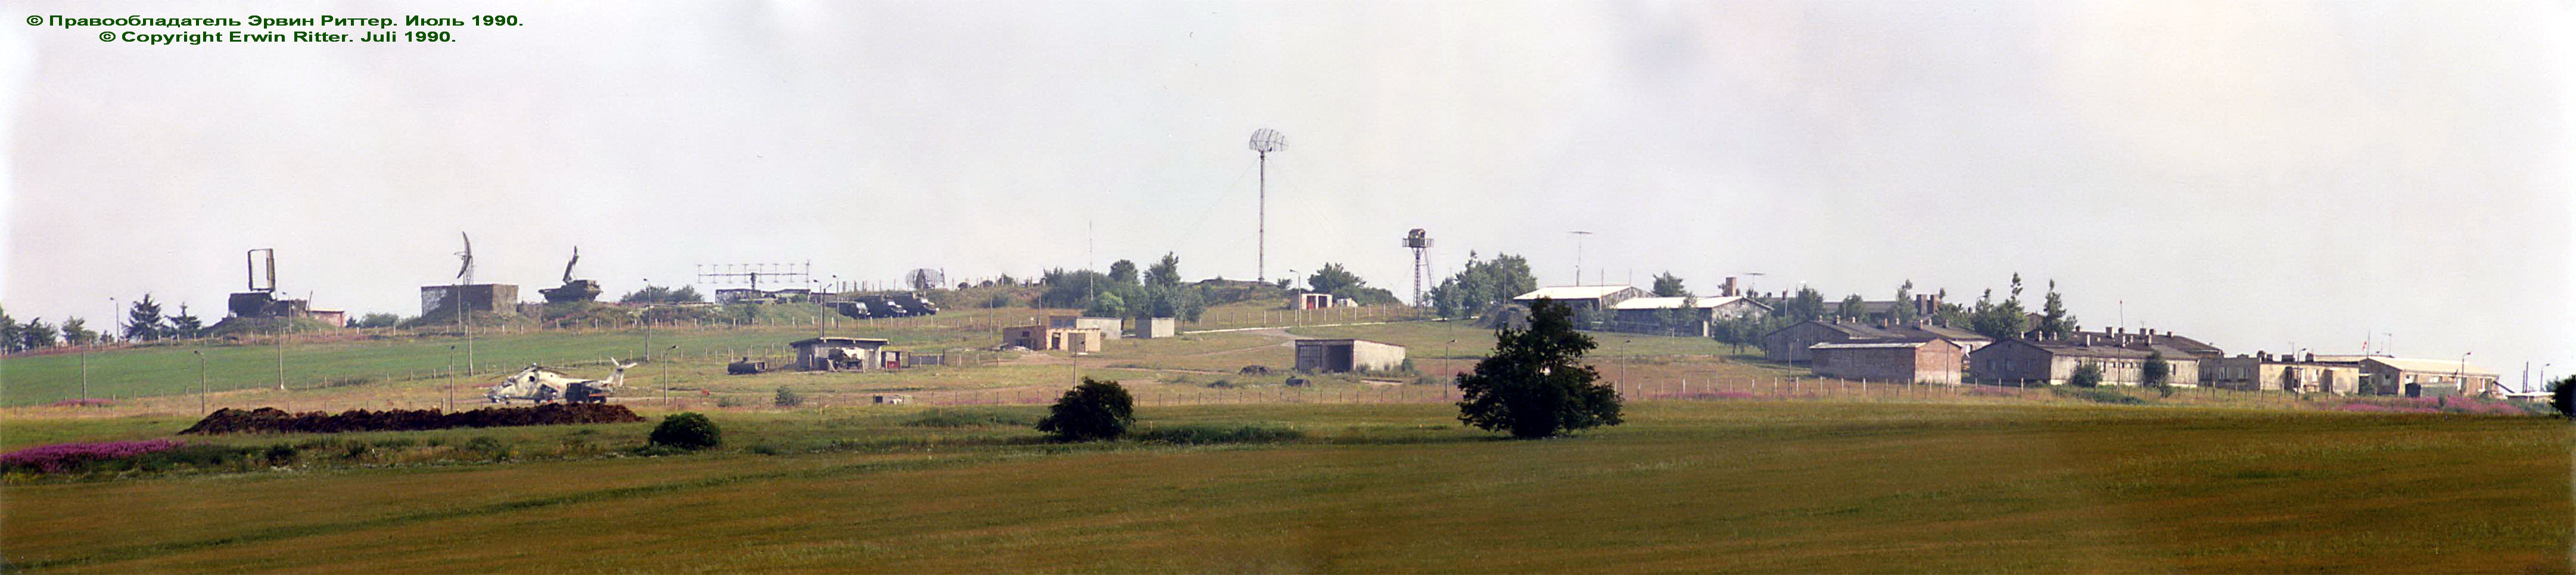 PVO radar site